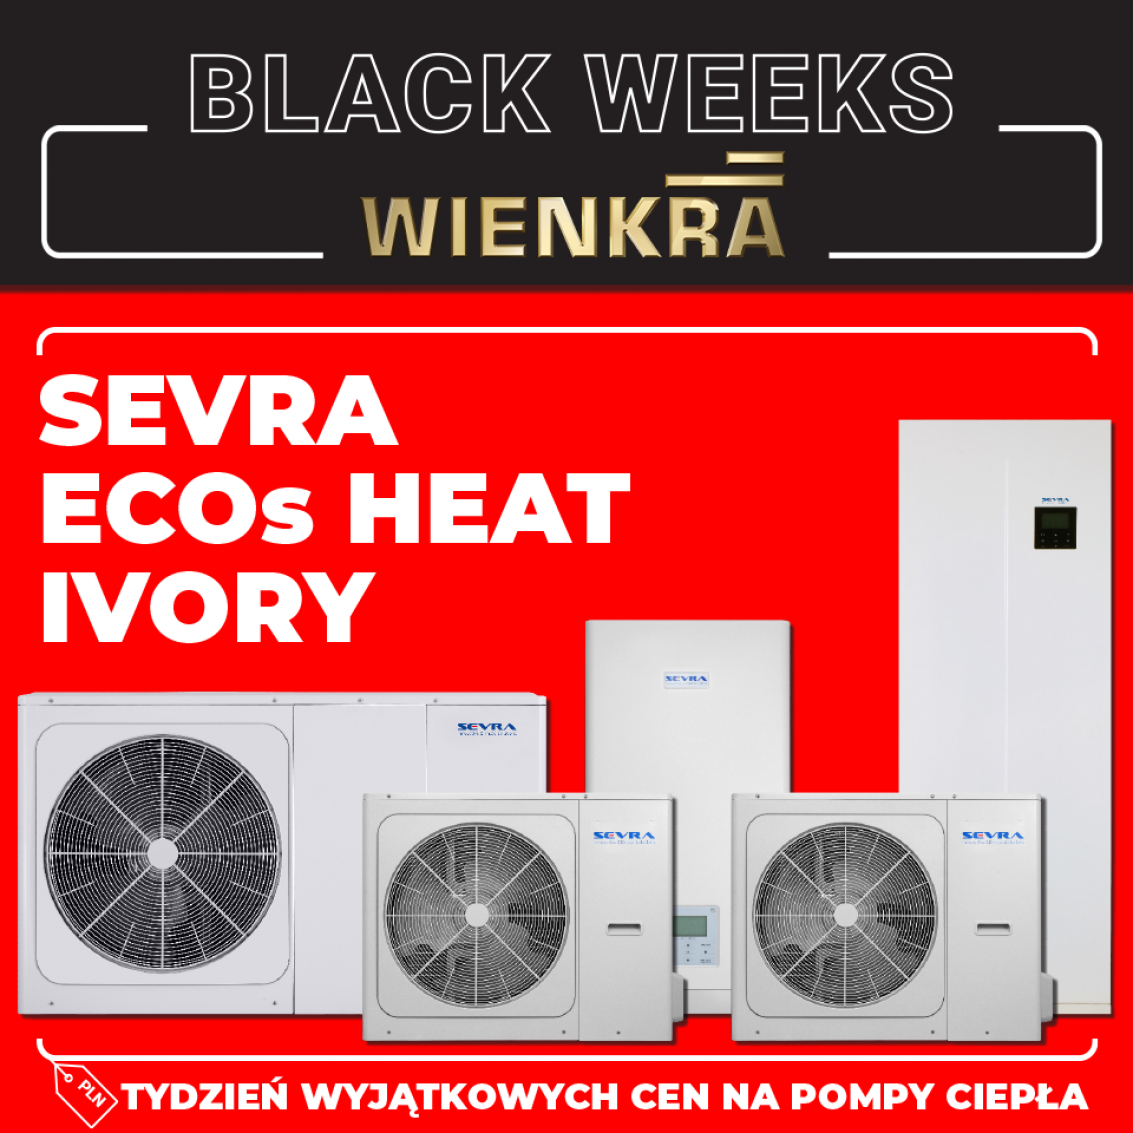 Zanurz się w wyjątkowych ofertach Black Weeks od SEVRA!